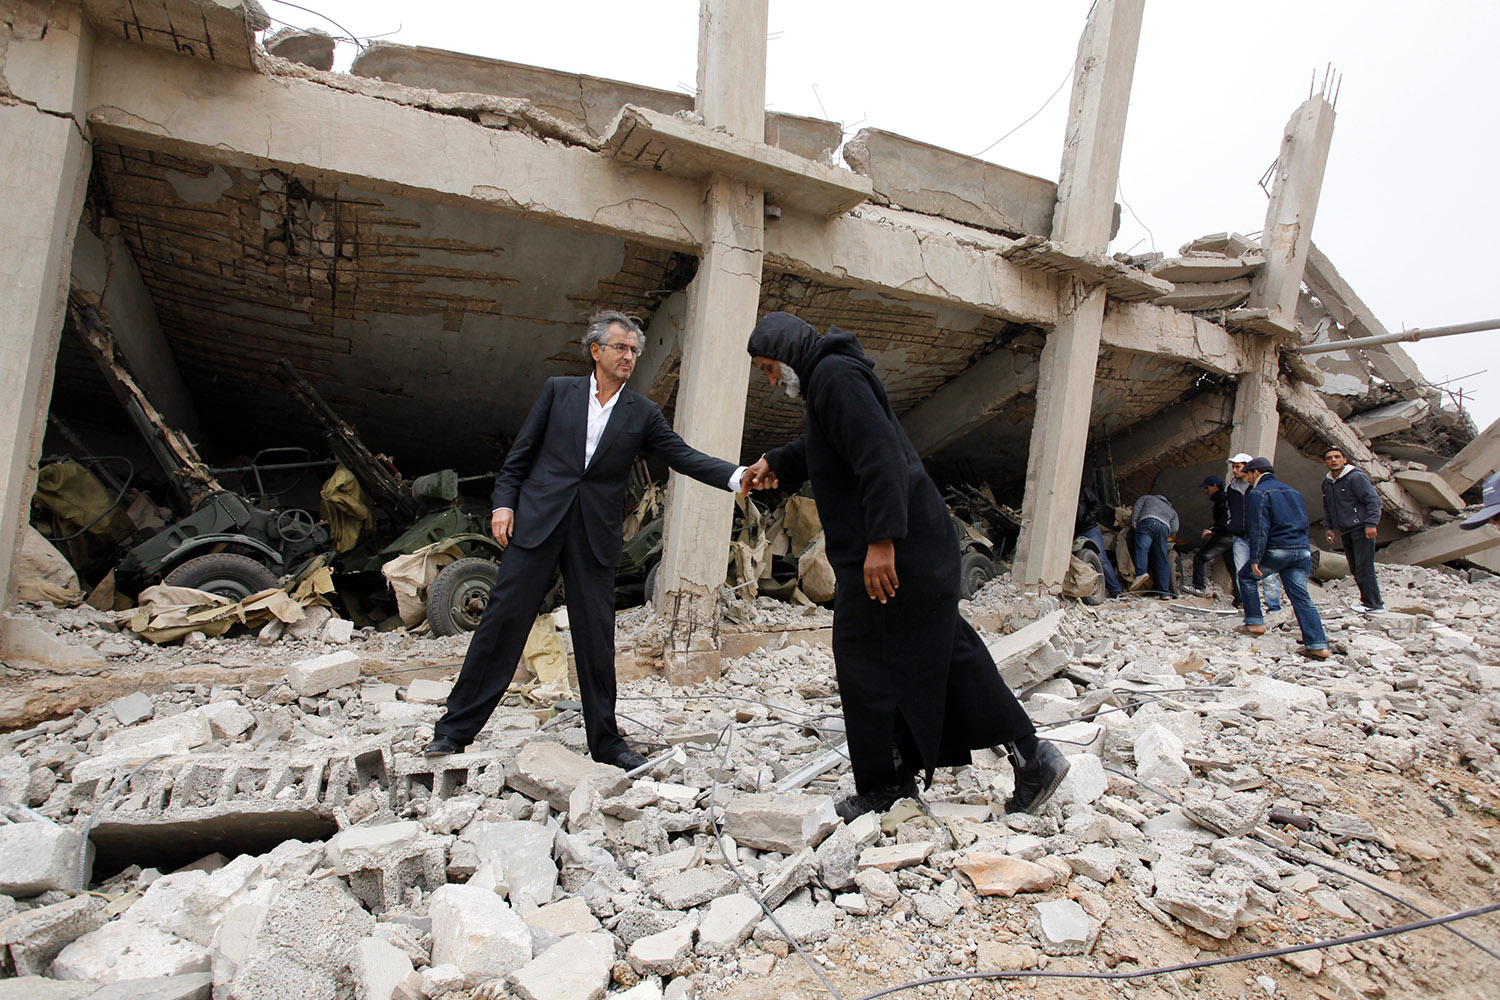 Bernard-Henri Lévy Dans les décombres de la ville de Benghazi en Libye. Il aide un homme à marcher en lui tendant le bras.